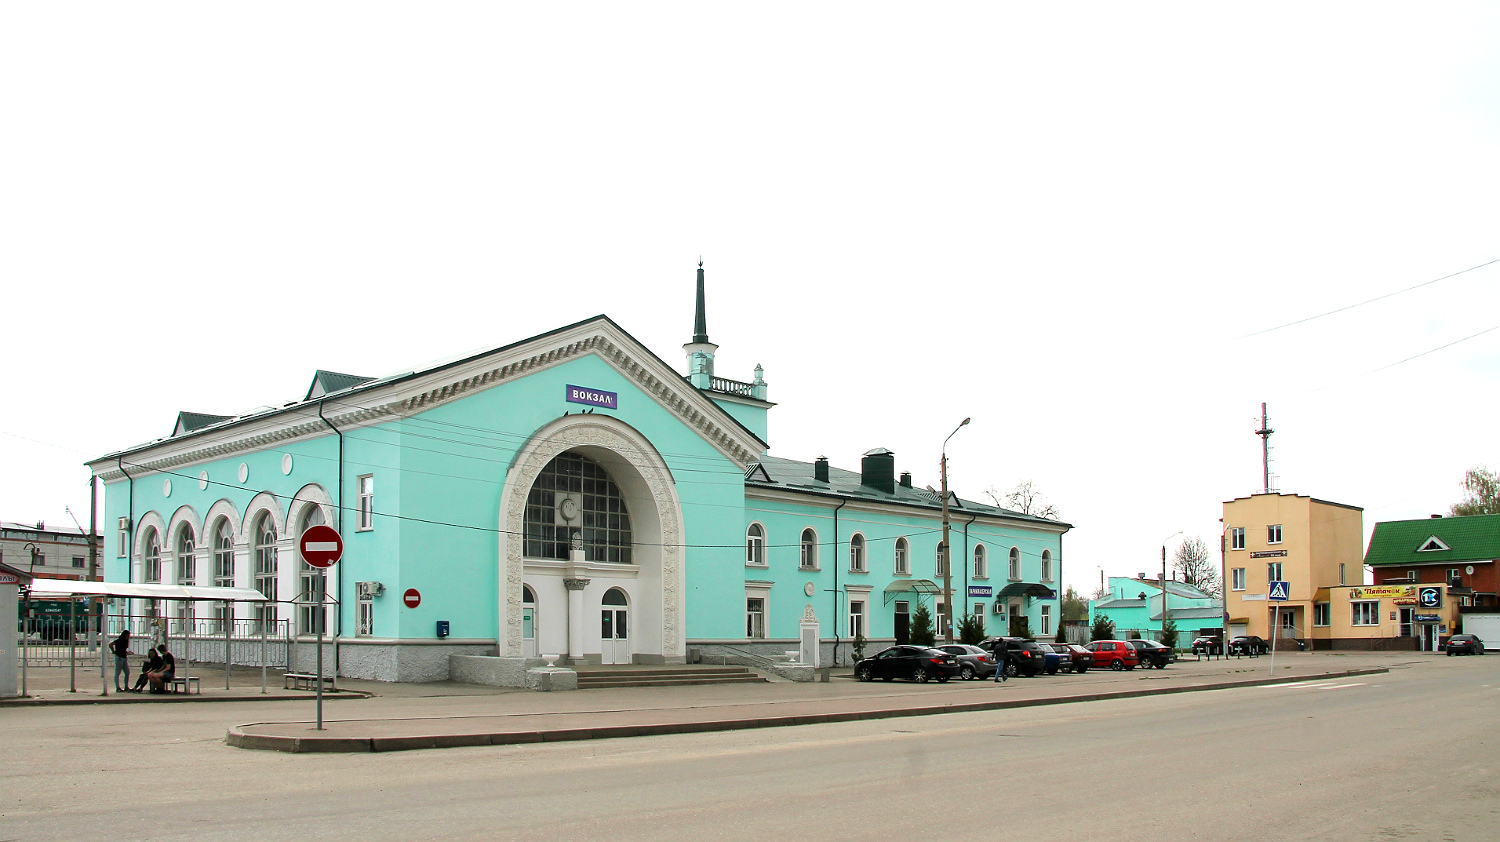 Вокзал орджоникидзе